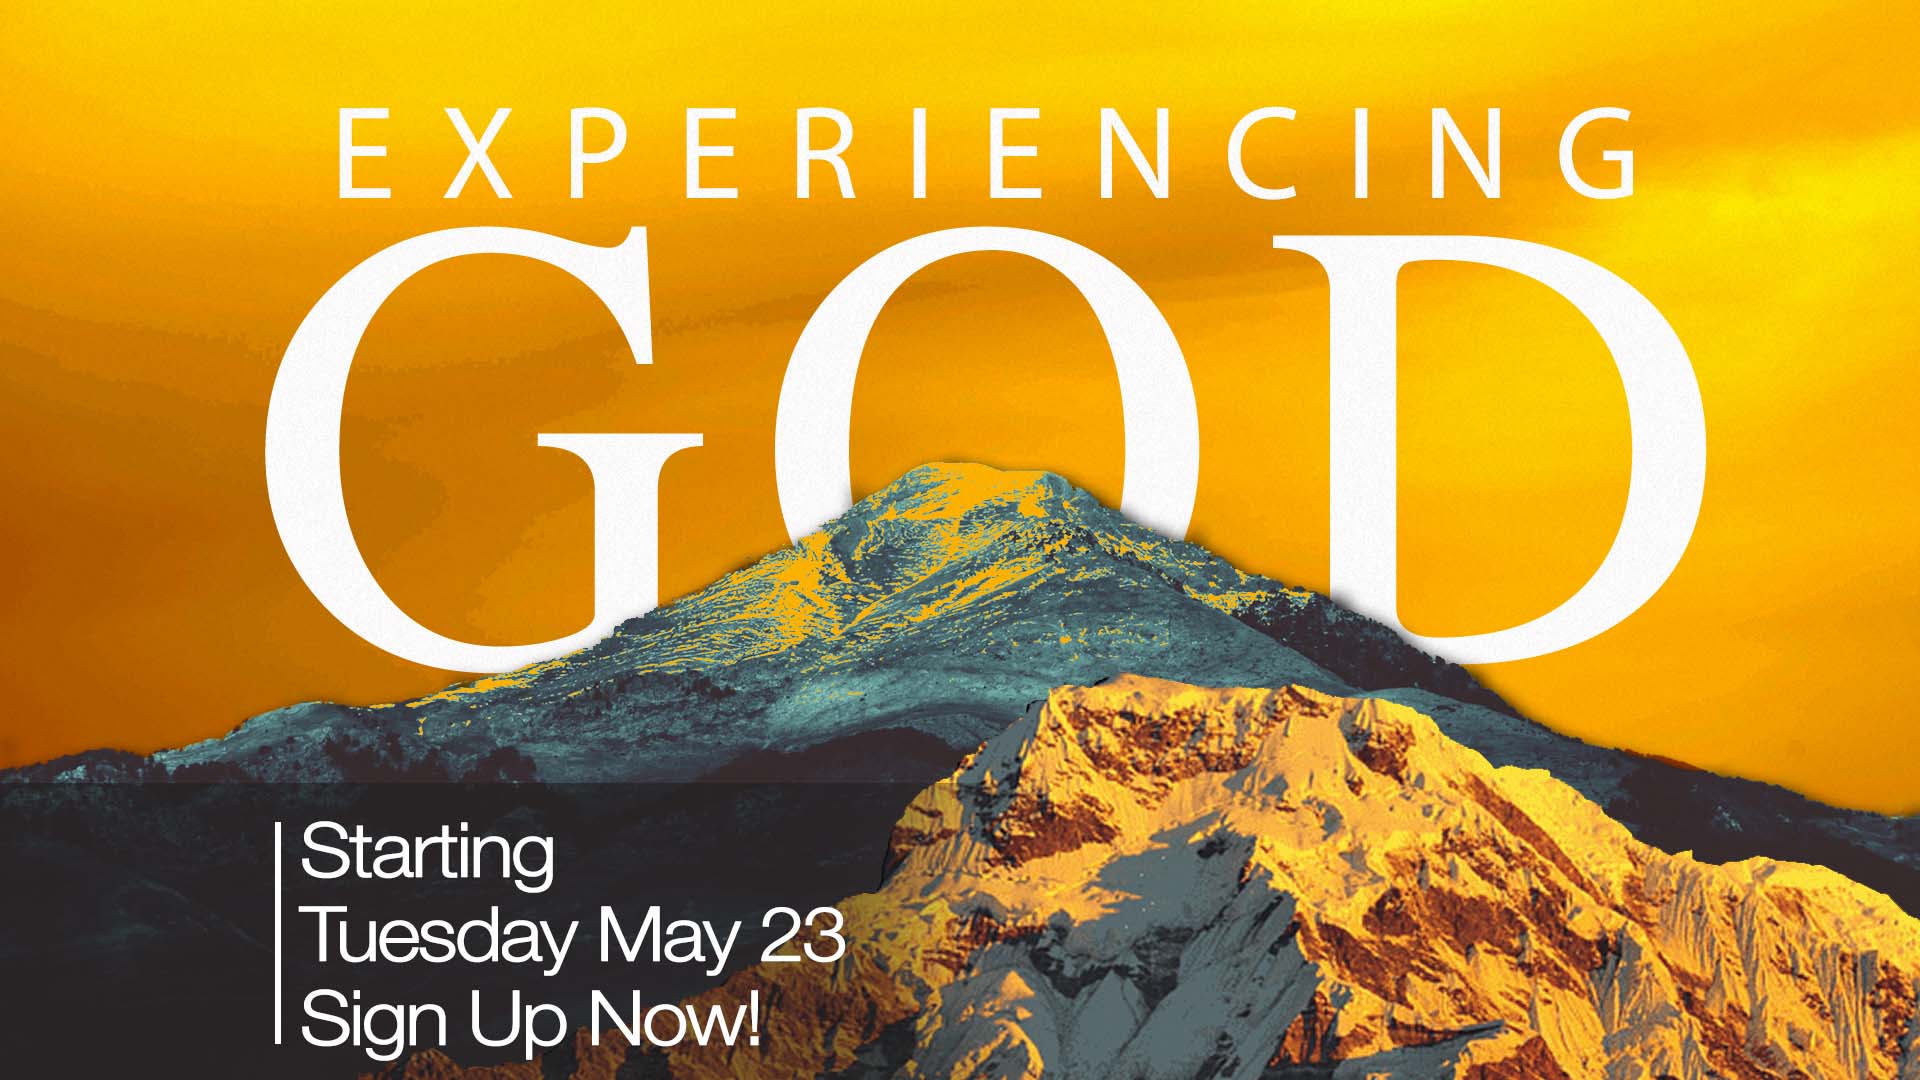 Experiencing God April 25, 2023